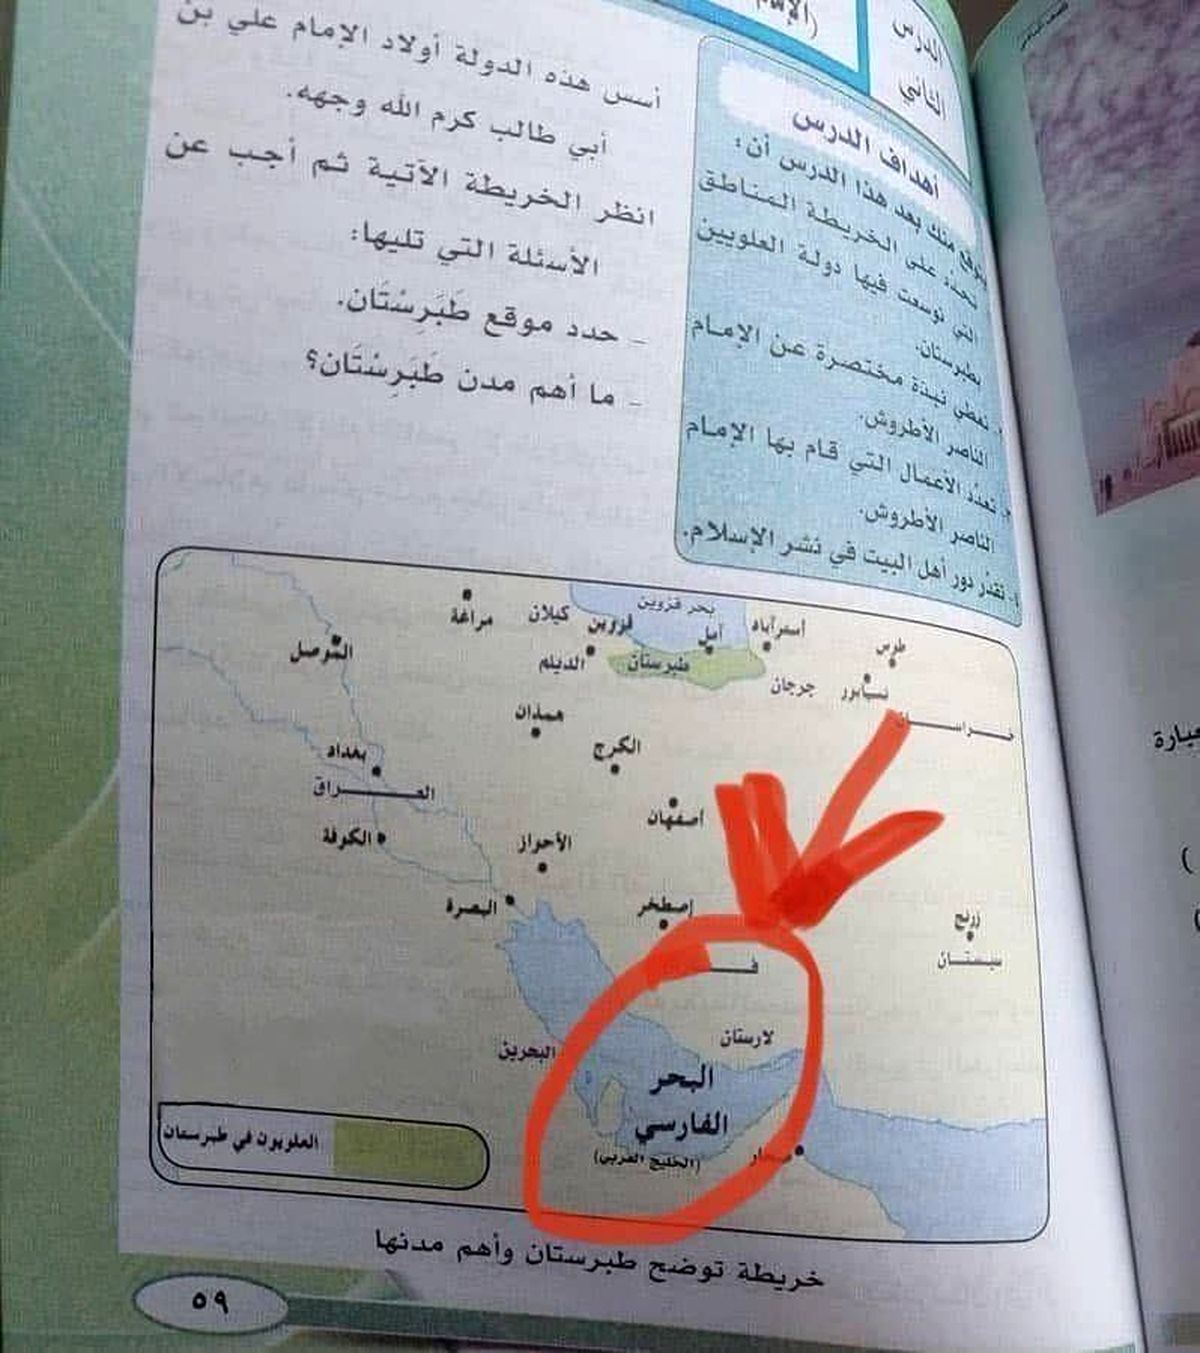 کتاب درسی دانش آموزان یمن جنجالی شد+عکس